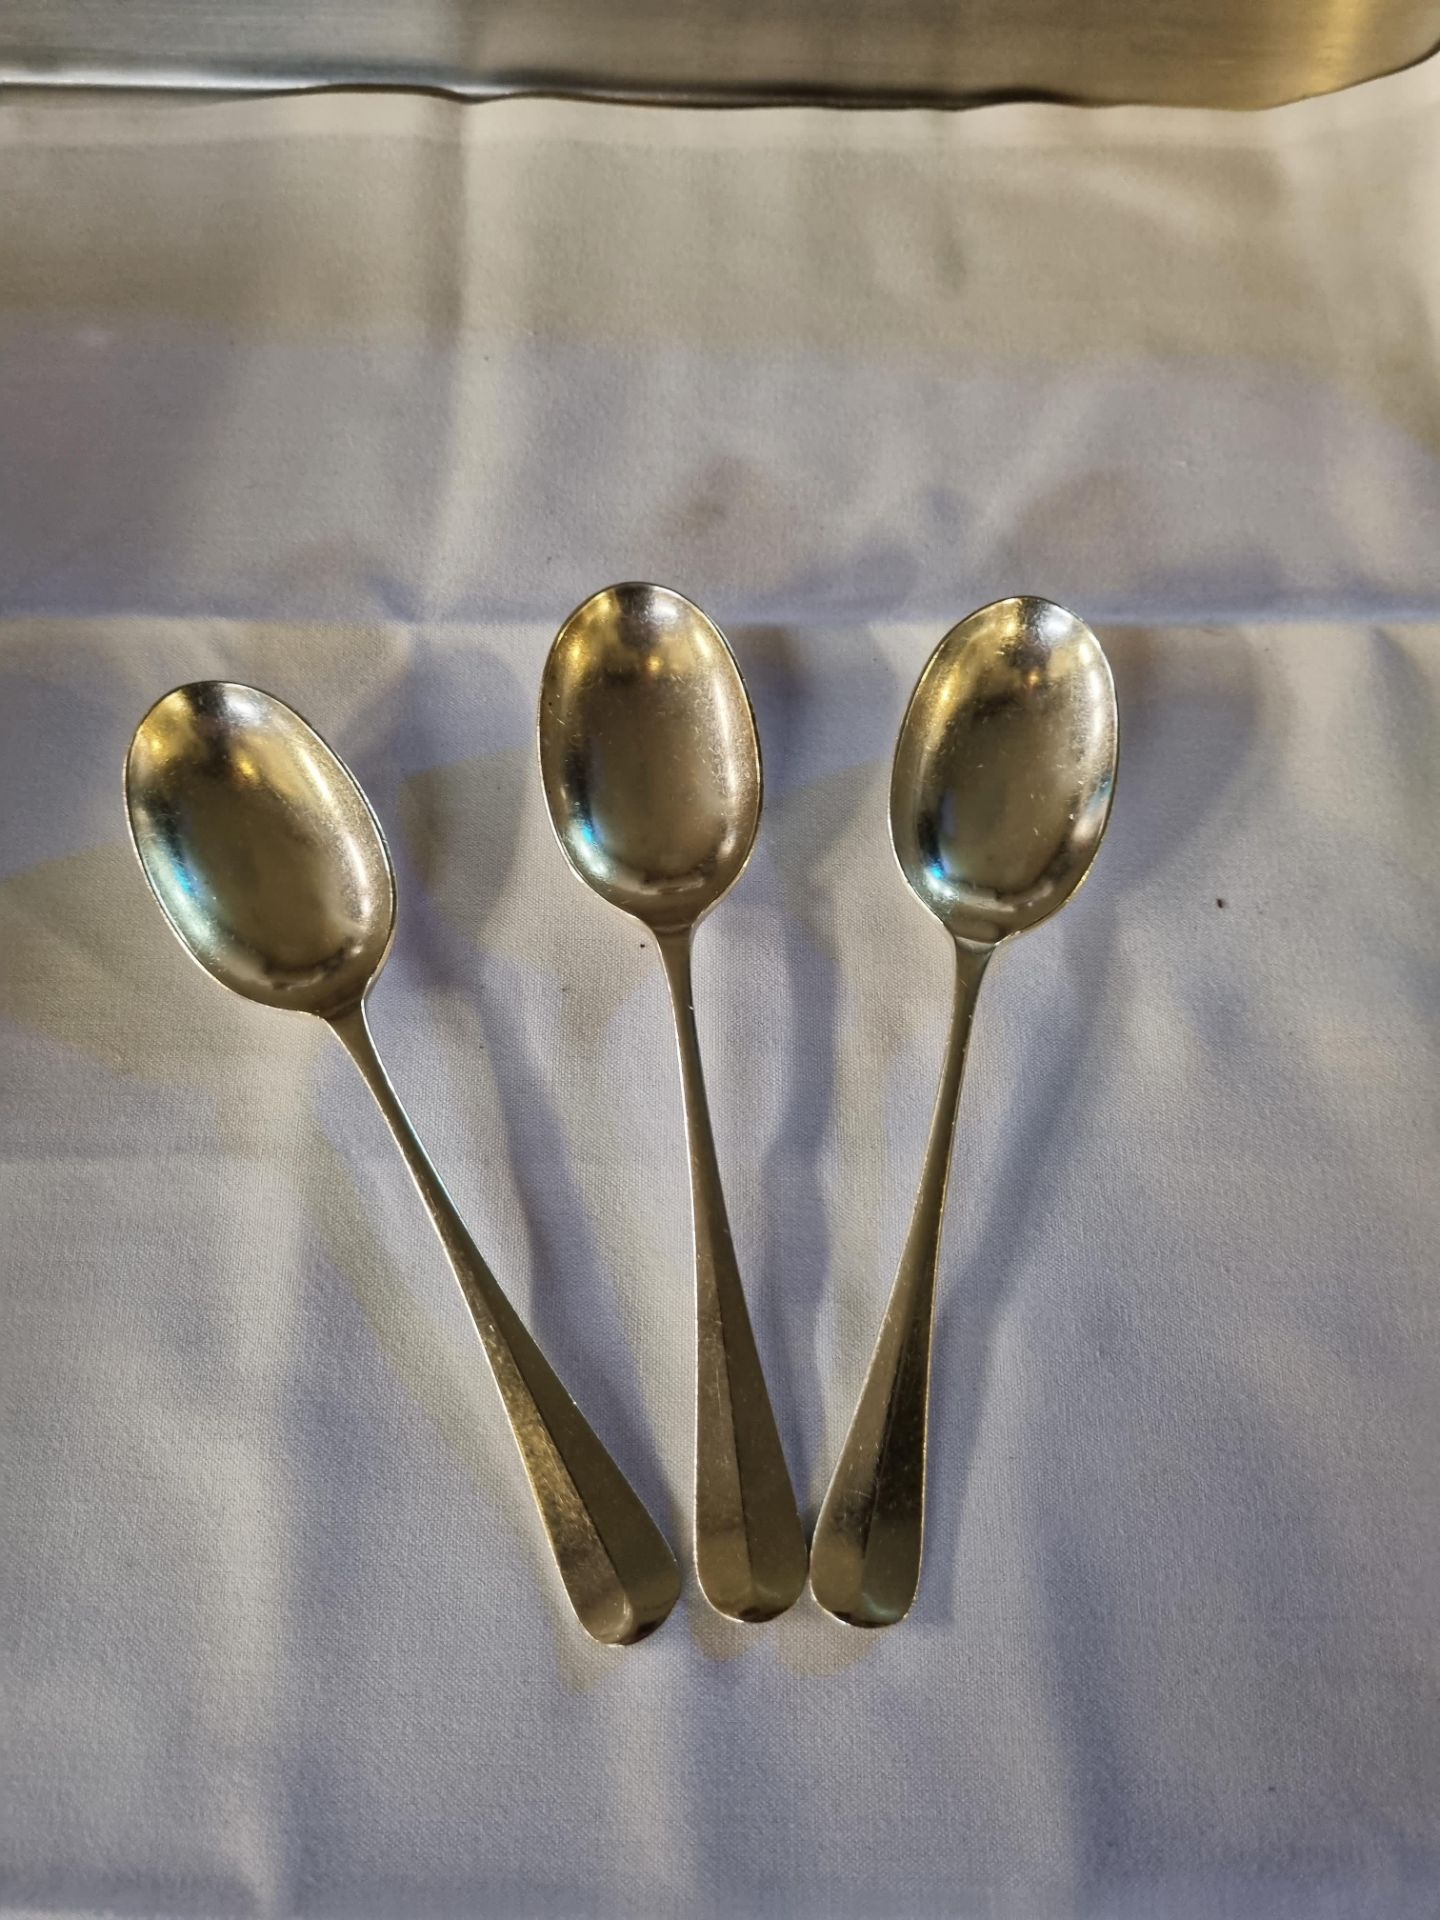 30x Silver Plate Cutlery Flatware, EPNS A1 Sheffield Tea Spoons